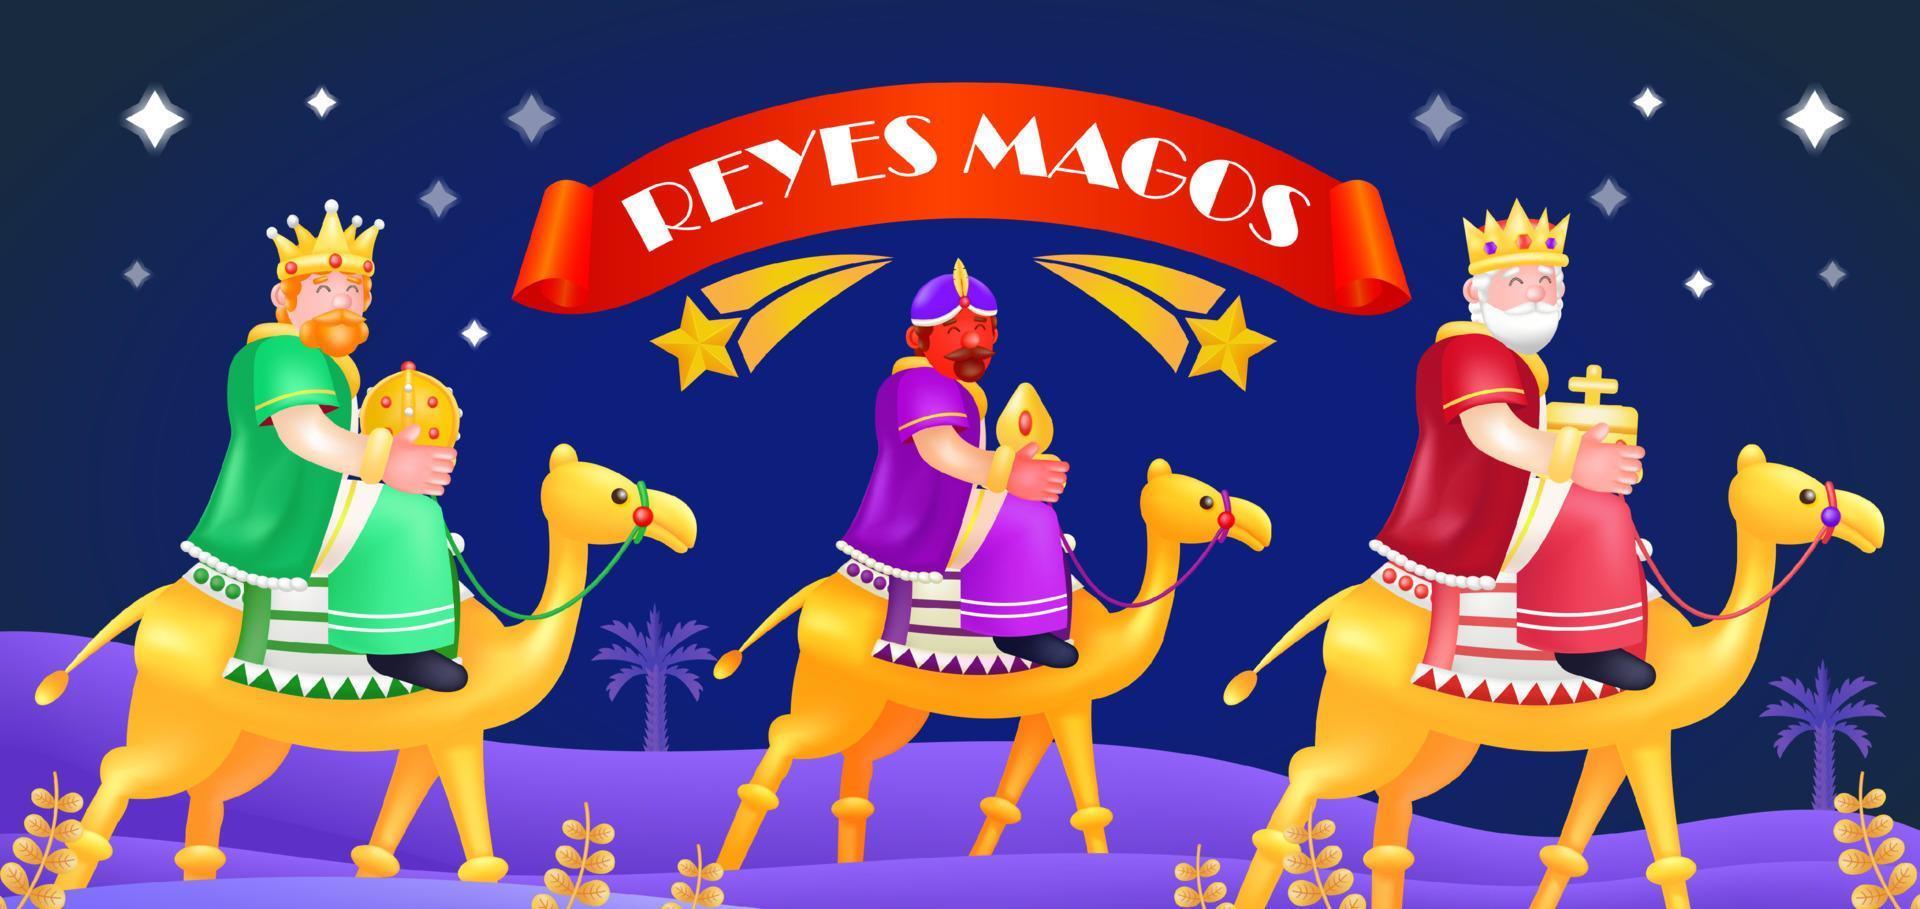 reyes magos. 3D-Darstellung von drei Priestern, die auf Kamelen reiten, mit einer Sternschnuppe im Hintergrund vektor